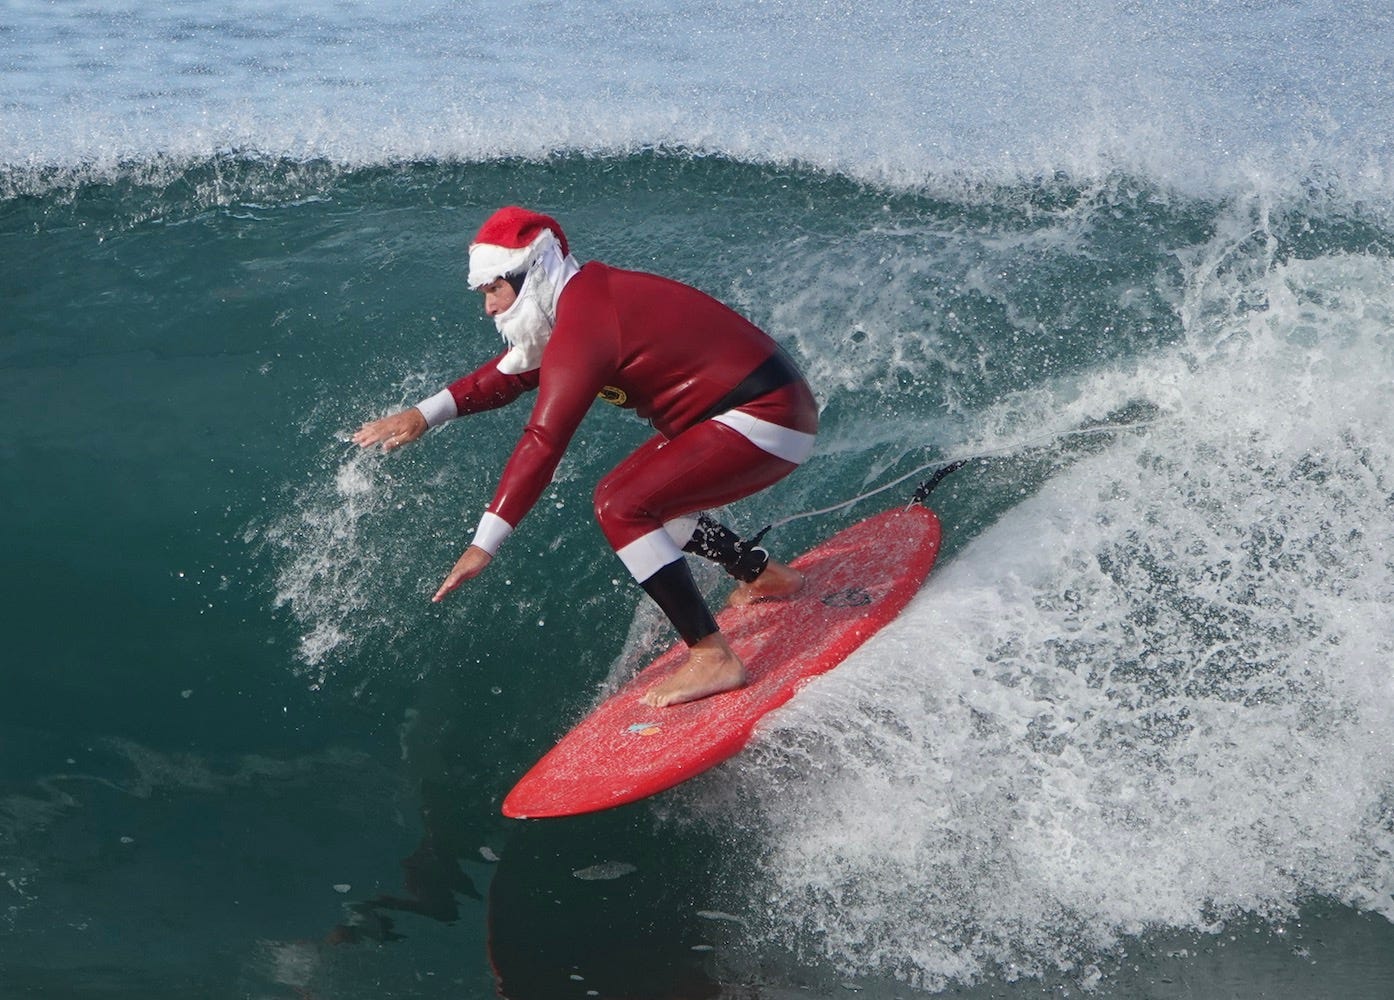 Tropical Christmas Surf Board Cutting Board